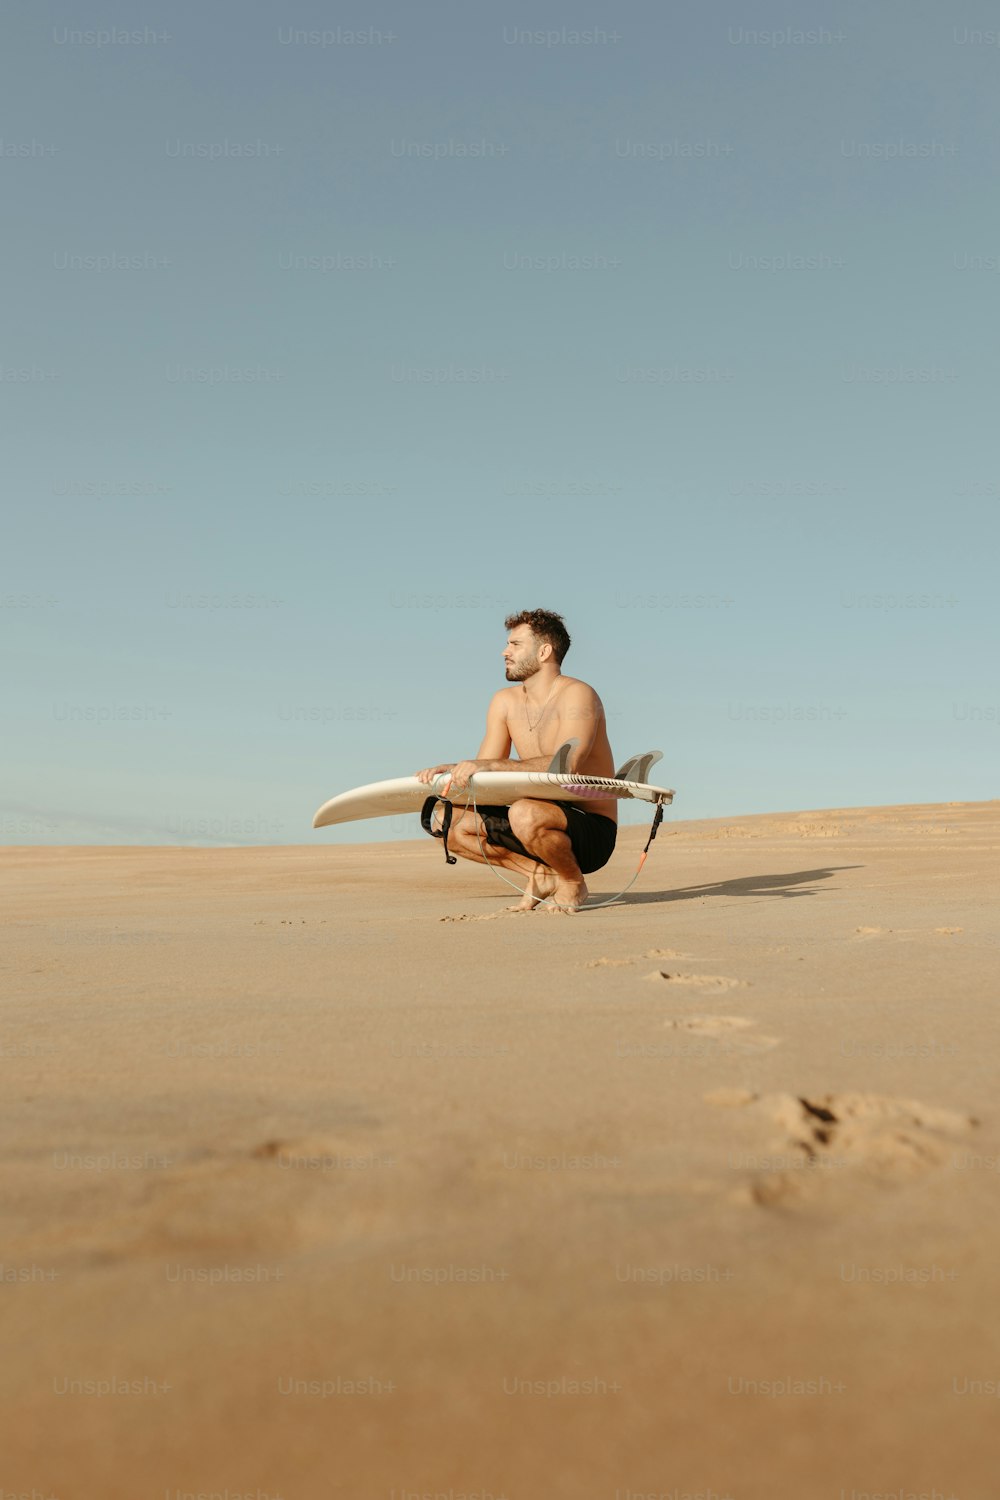 Un hombre arrodillado mientras sostiene una tabla de surf